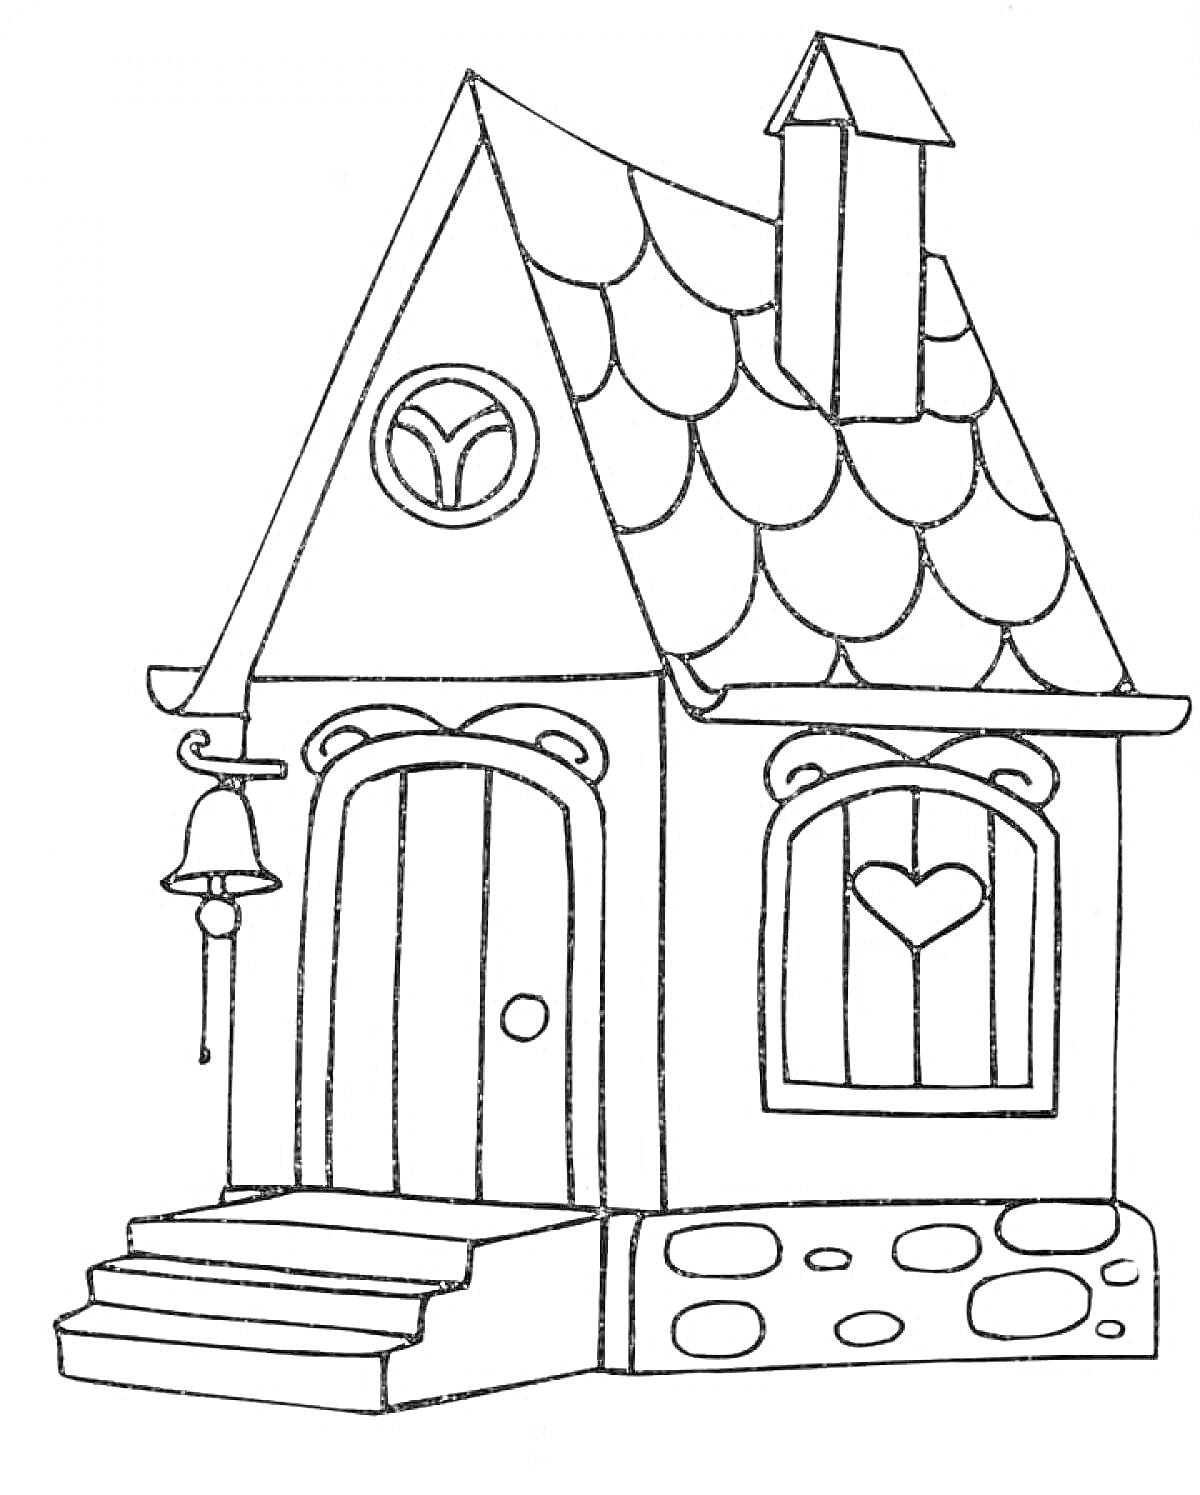 Домик с крыльцом, колоколом, окном с сердцем и трубой